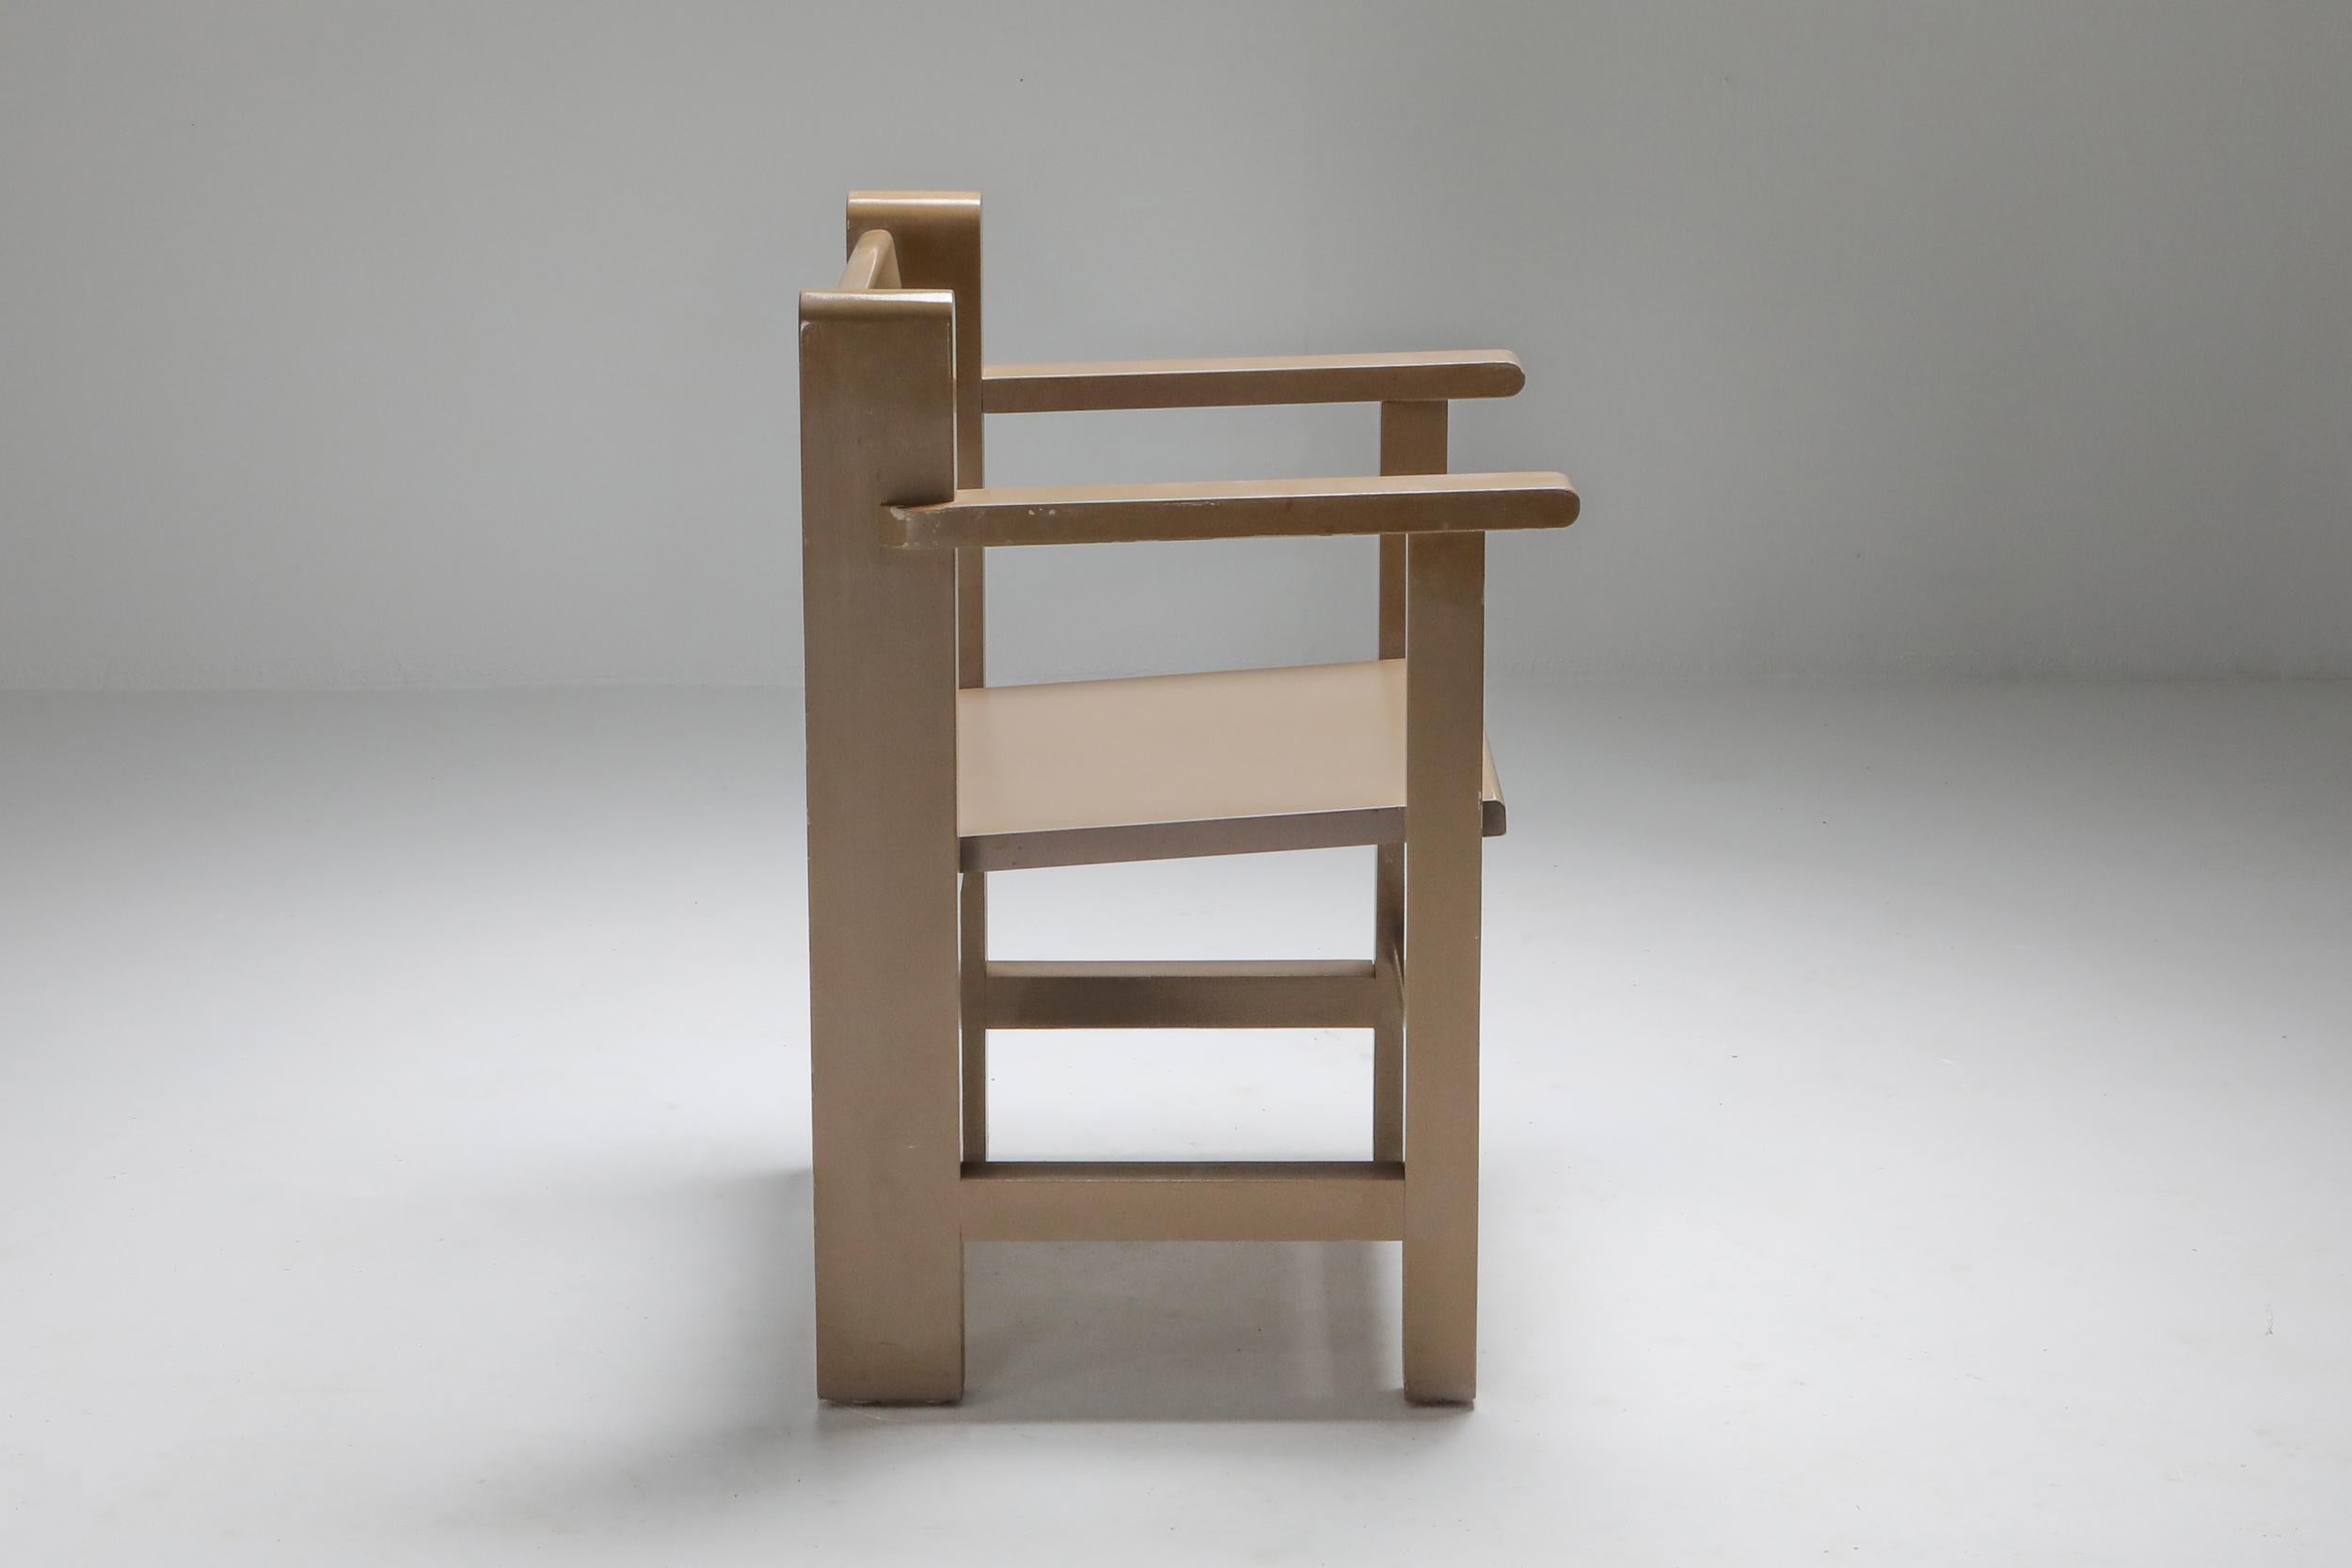 Dutch Modernist 'Bossche school' Armchairs by Gerard Wijnen 1